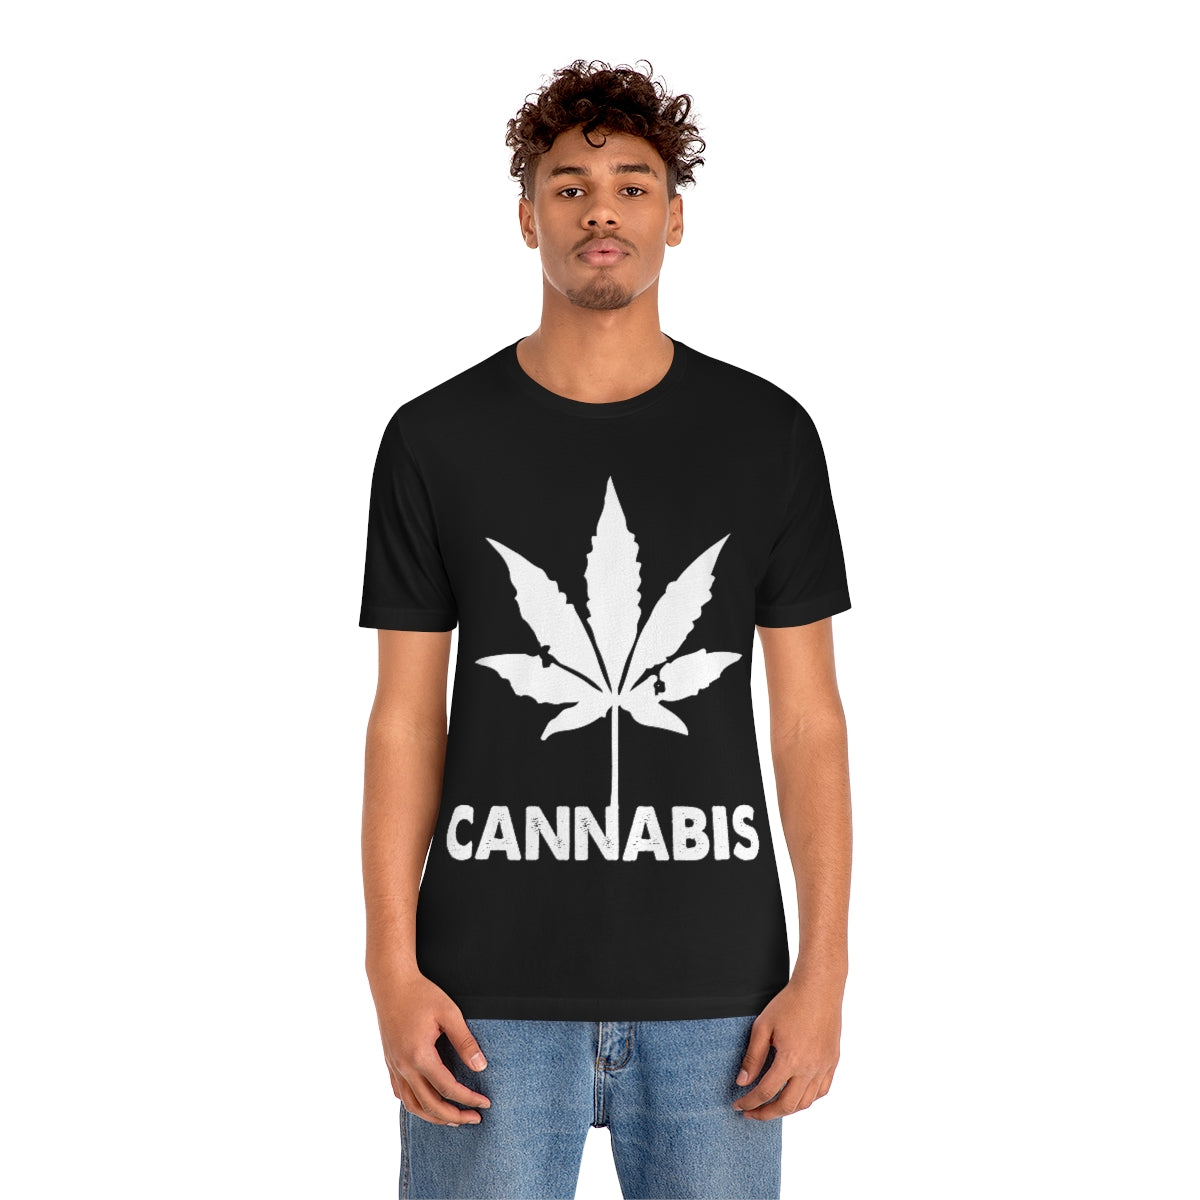 Cannabis Shirt - Unisex Jersey Short Sleeve Tee